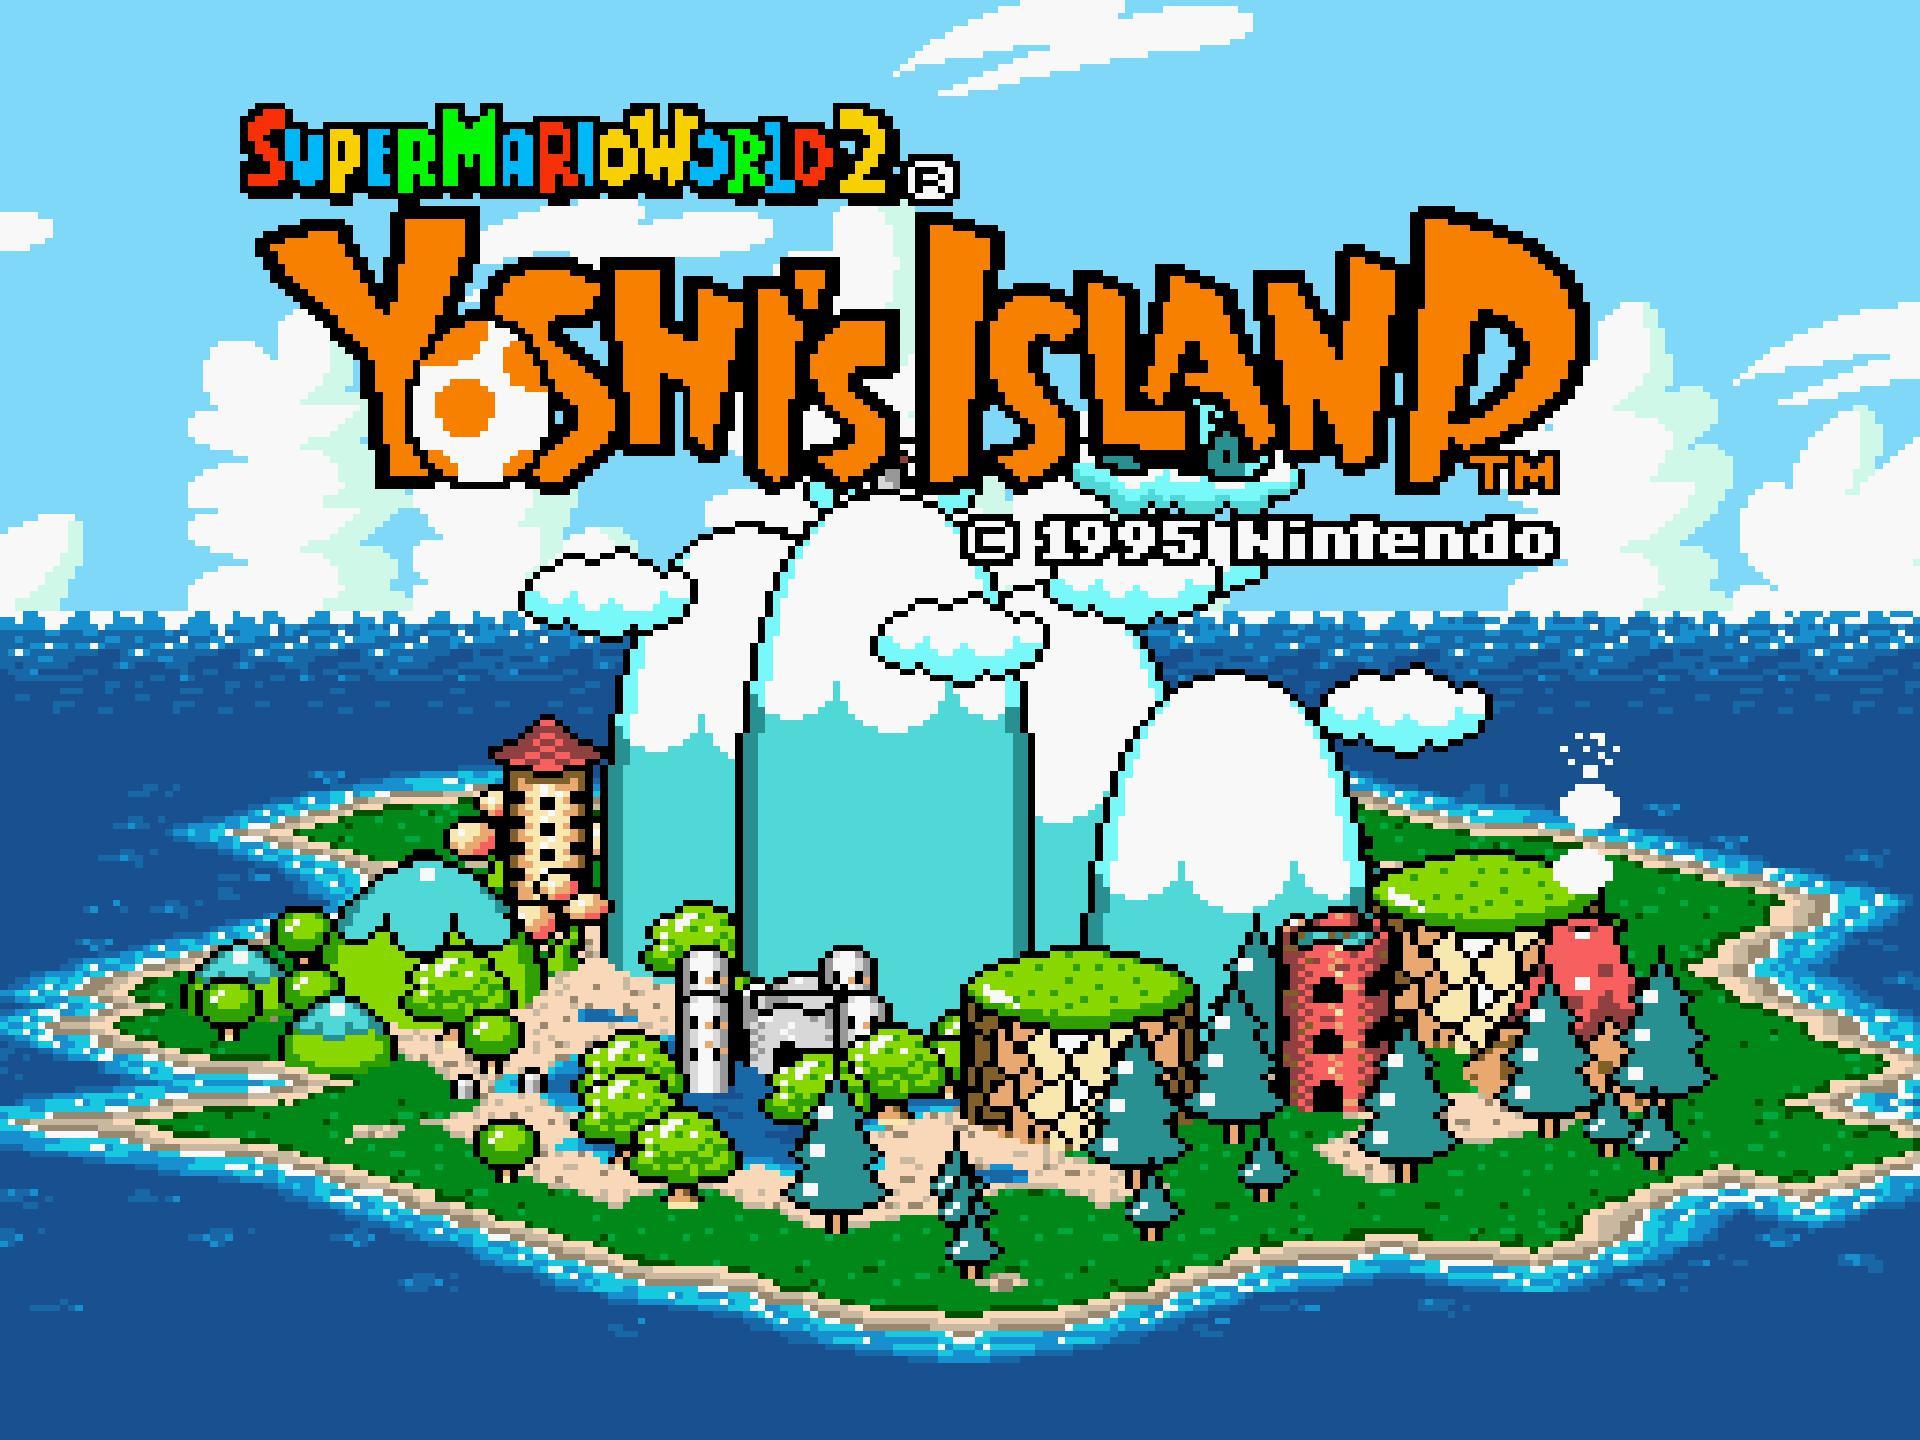 Mario yoshi island. Super Mario World 2 - Yoshi's Island Snes. Super Mario World 2 Yoshis Island. Super Mario Yoshi Island.